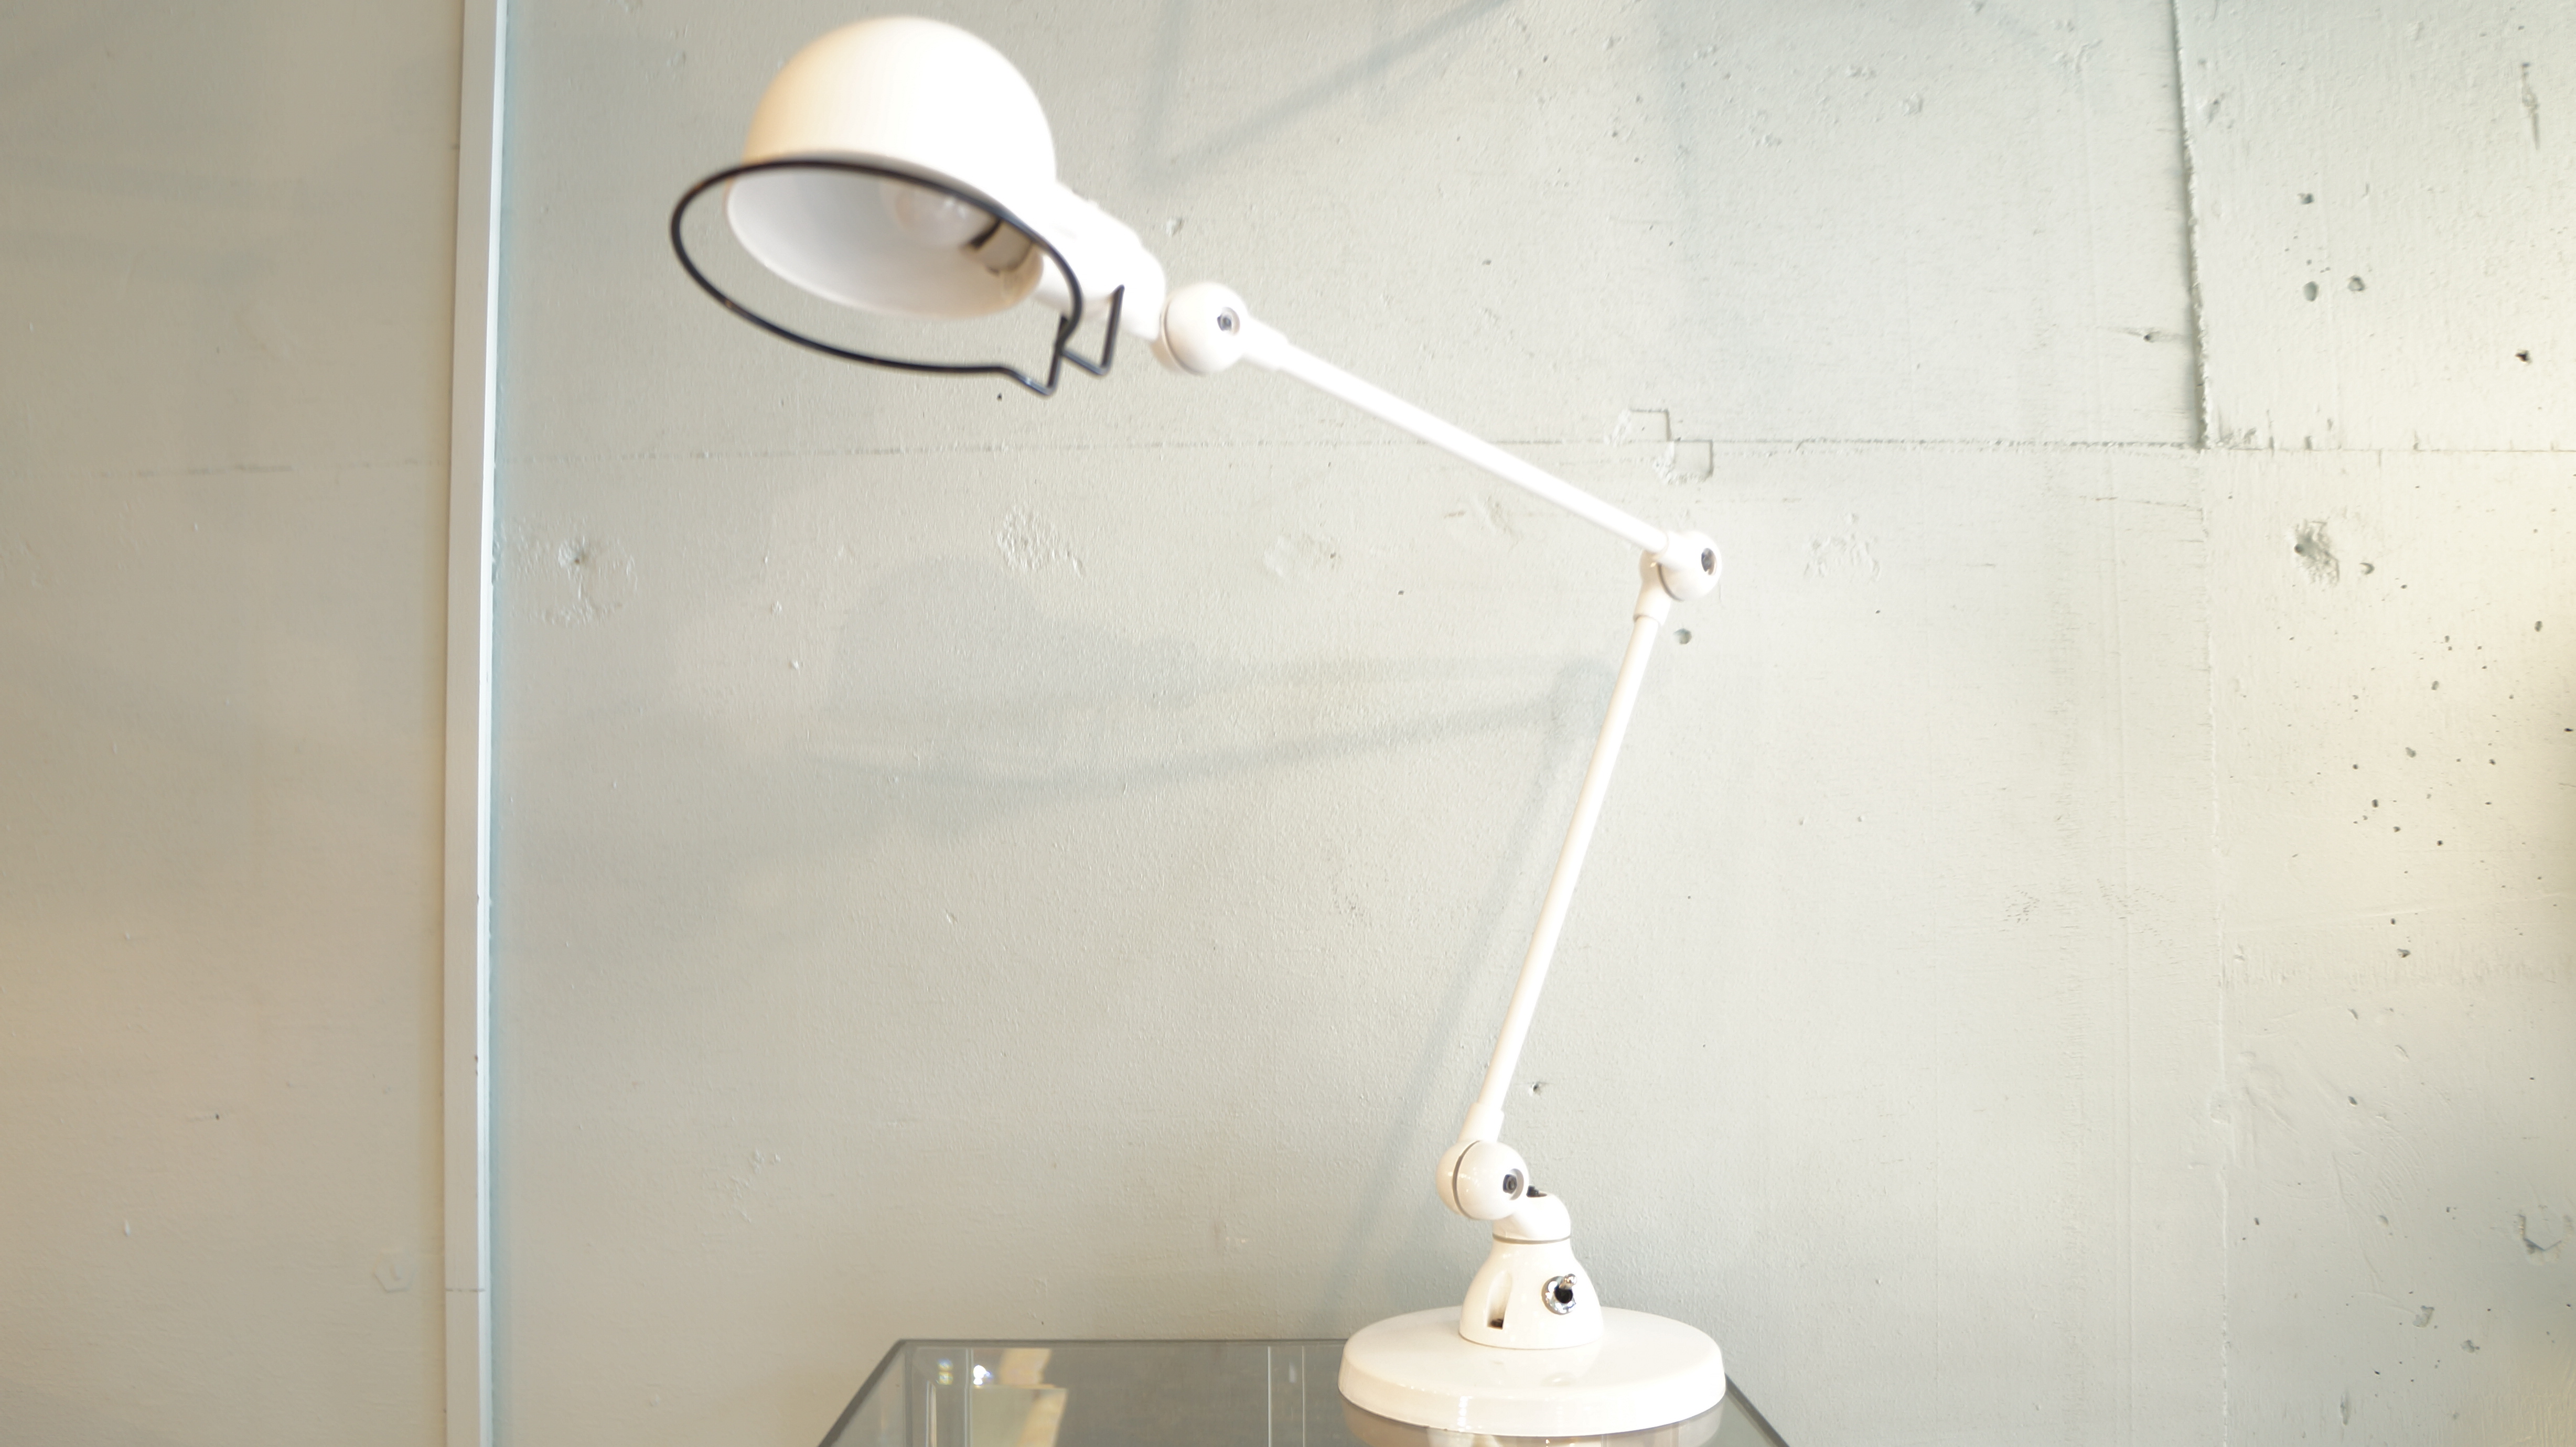 Jielde' JD333 Signal Desk Lamp made in France / ジェルデ社 シグナル デスク ランプ フランス製